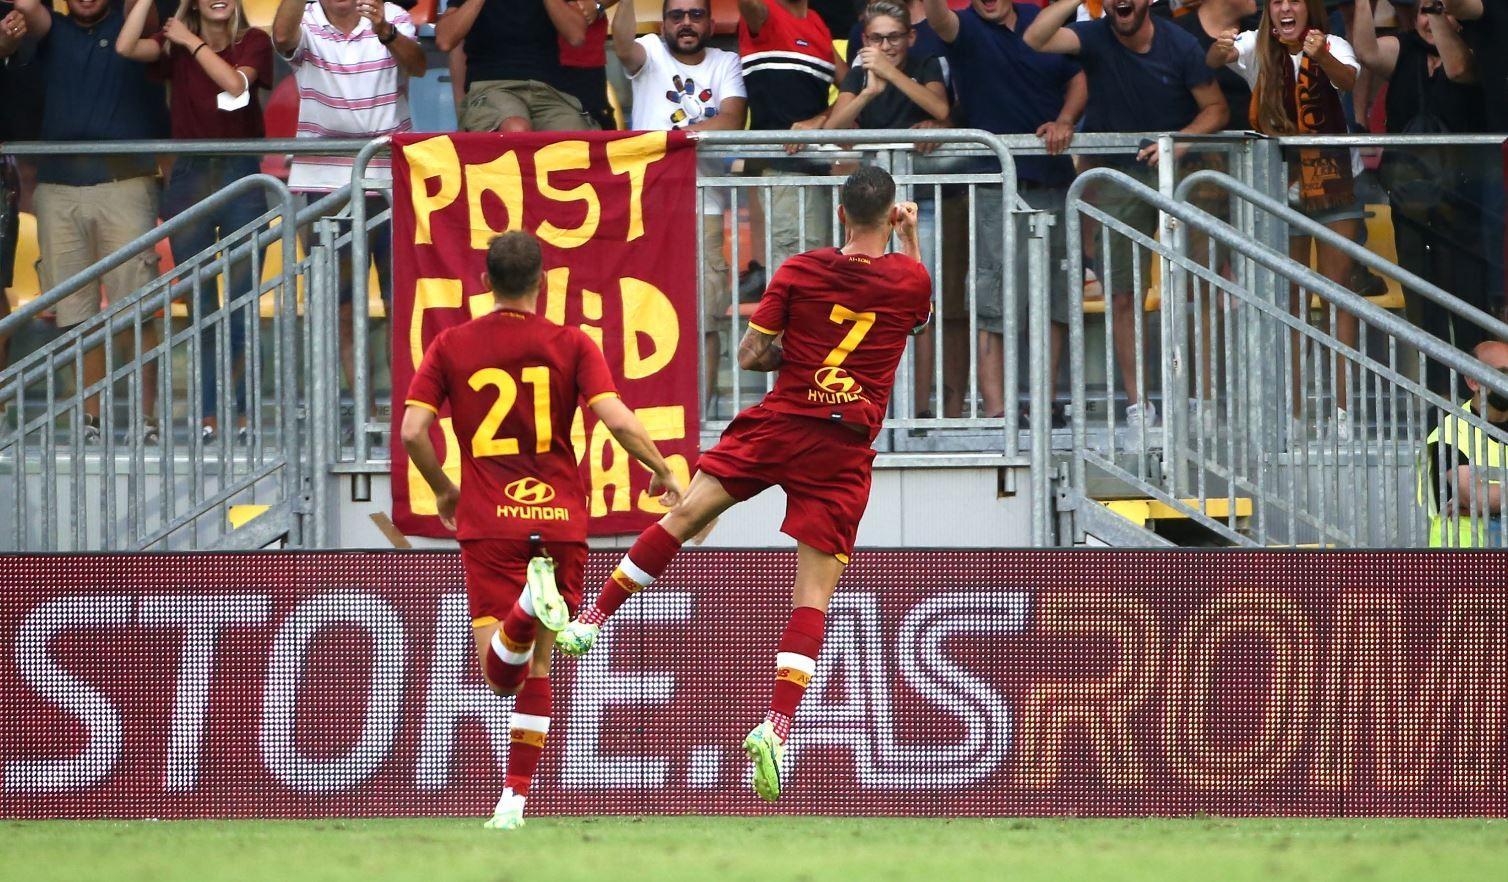 Pellegrini esulta sotto il settore dei tifosi romanisti dopo il gol del 2-1, di Mancini